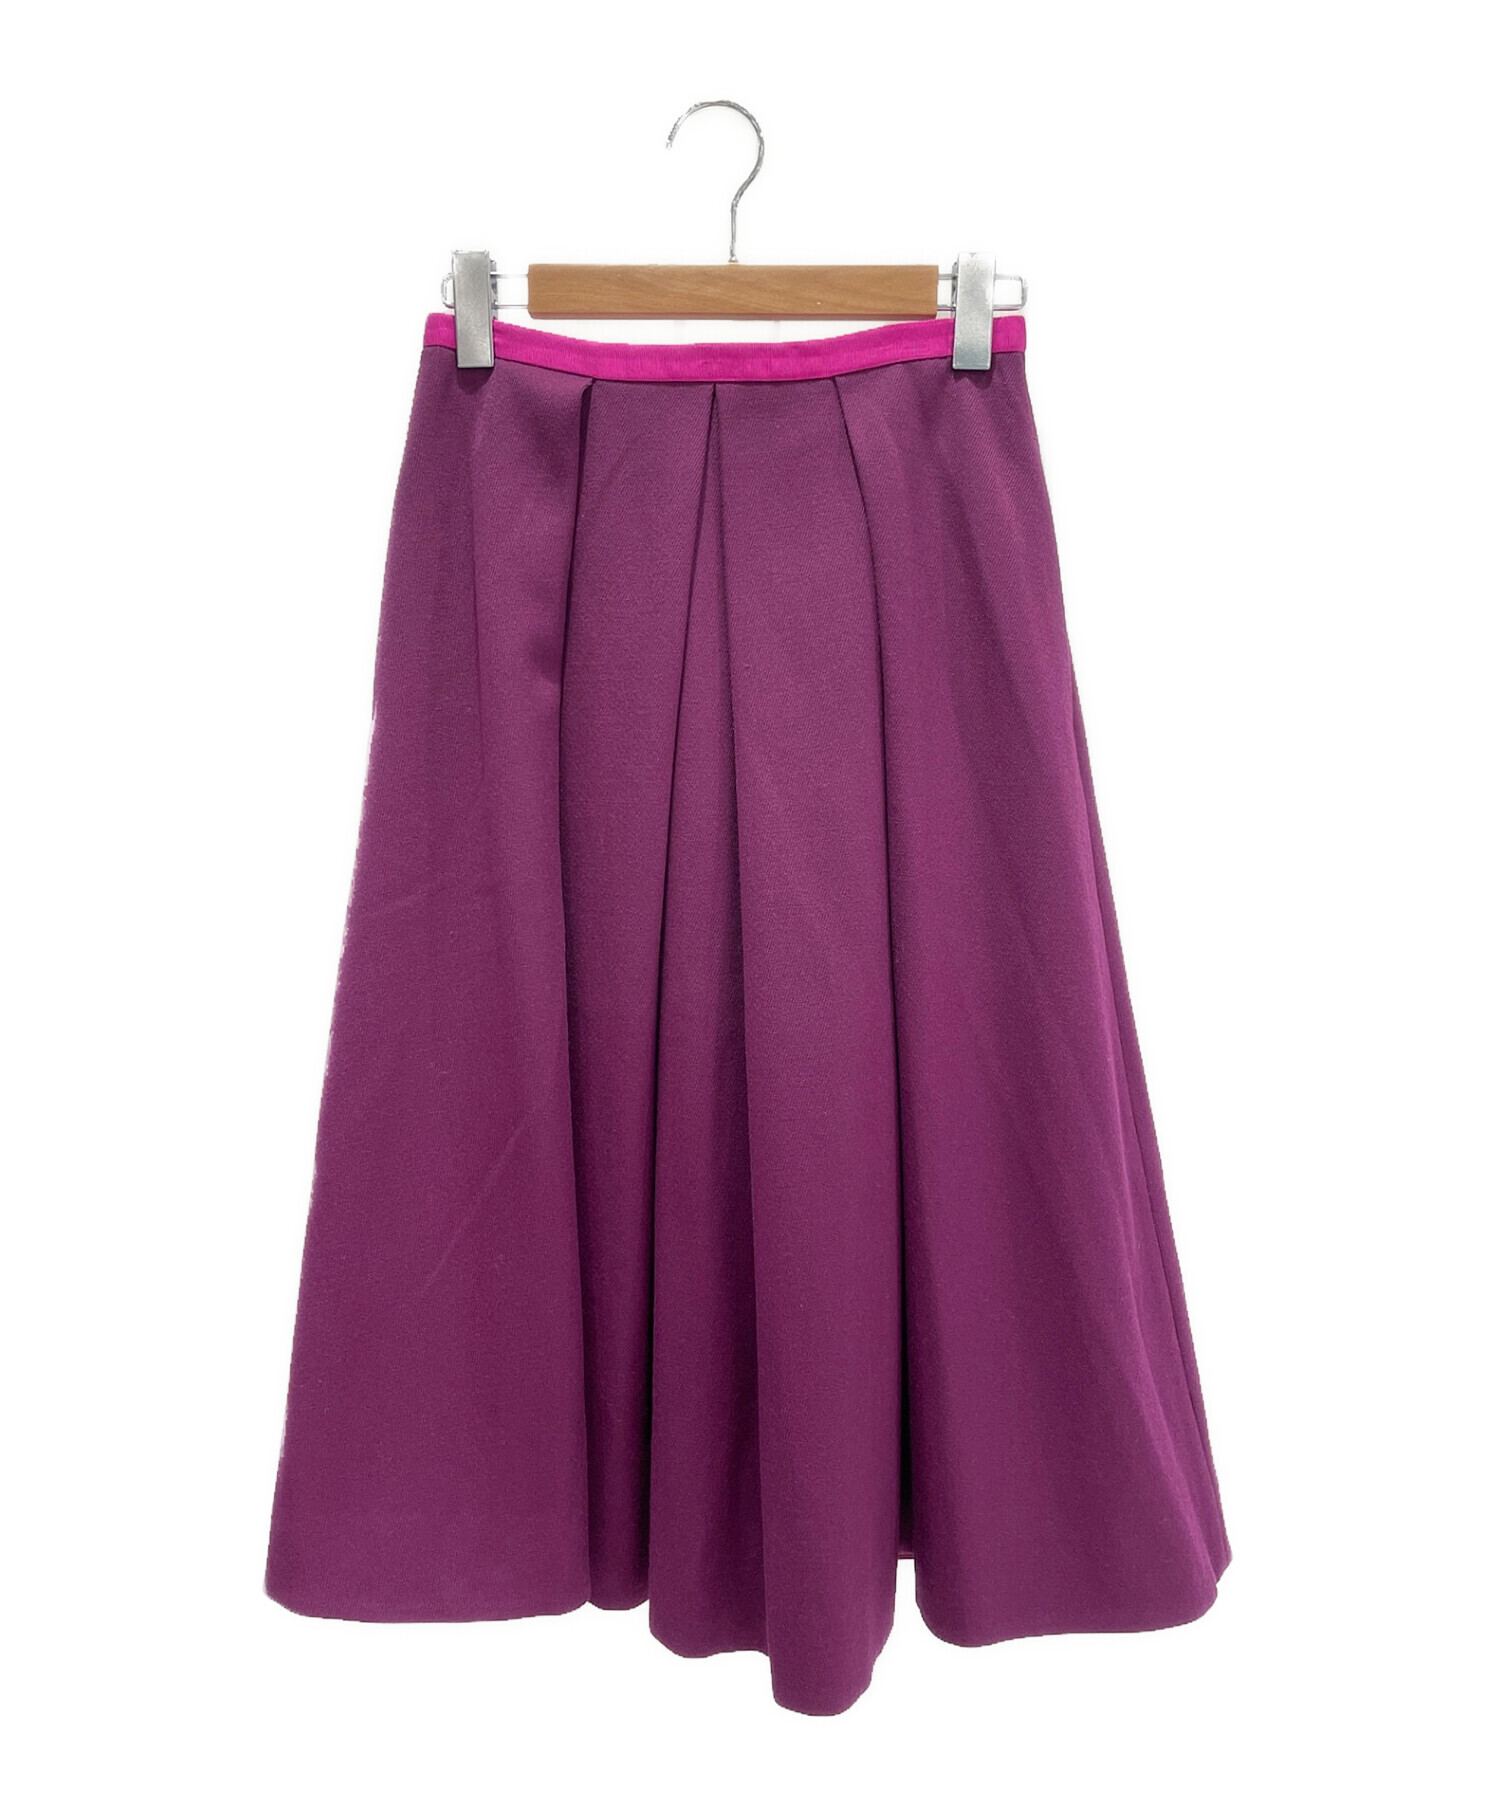 ドゥロワー Drawer スカート パープル プリーツスカート 紫 | www ...